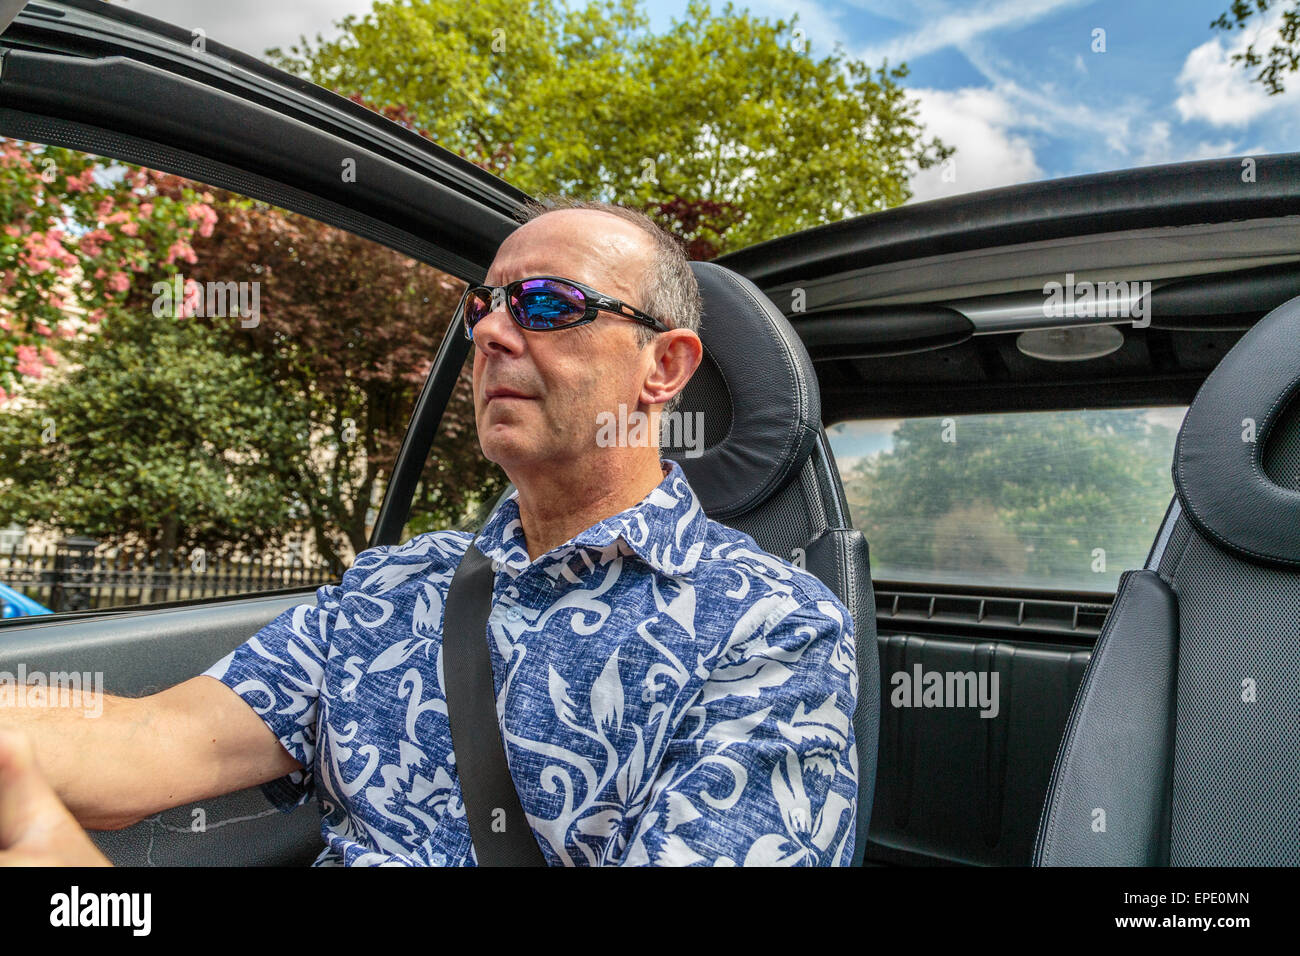 Un uomo di mezza età alla guida di una vettura Cabriolet con il tetto verso il basso in un giorno di estate in Londra England Regno Unito Foto Stock